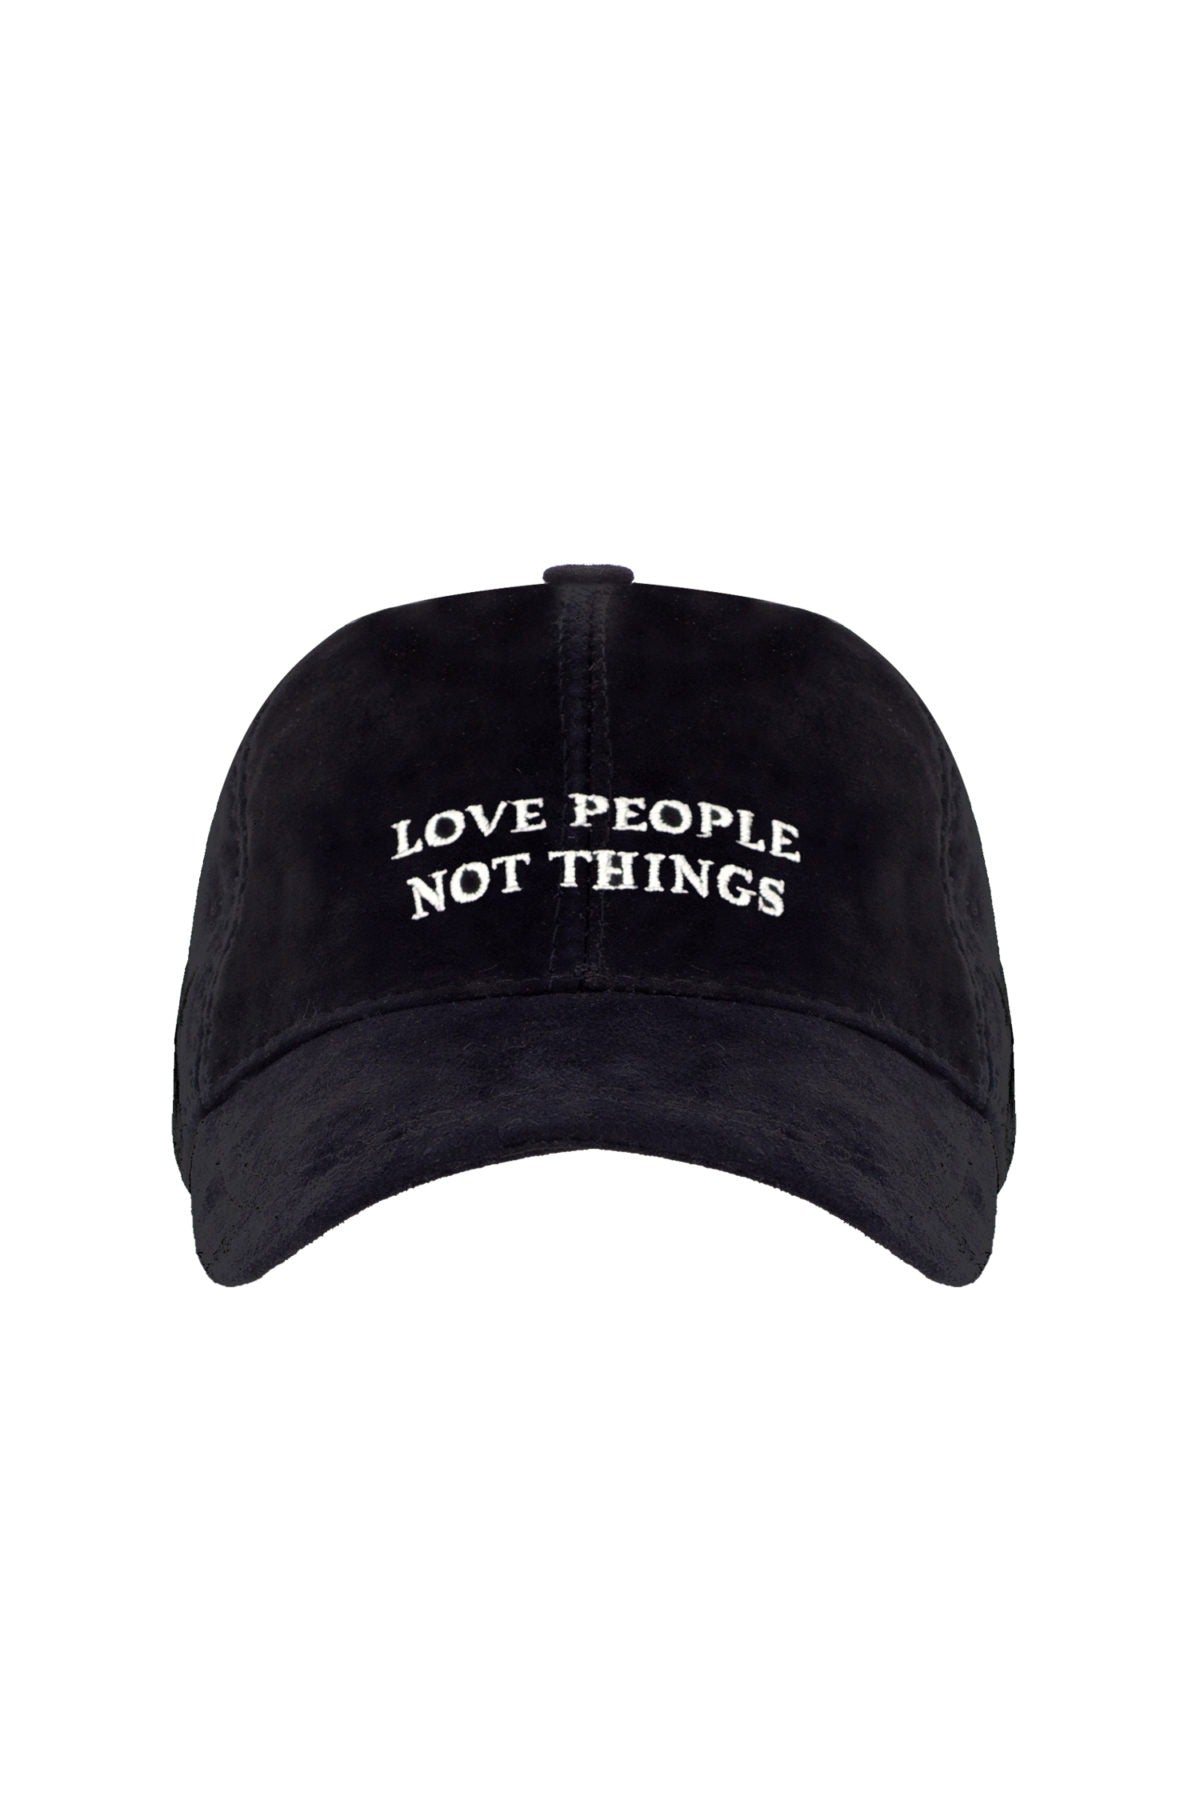 Love People Not Things